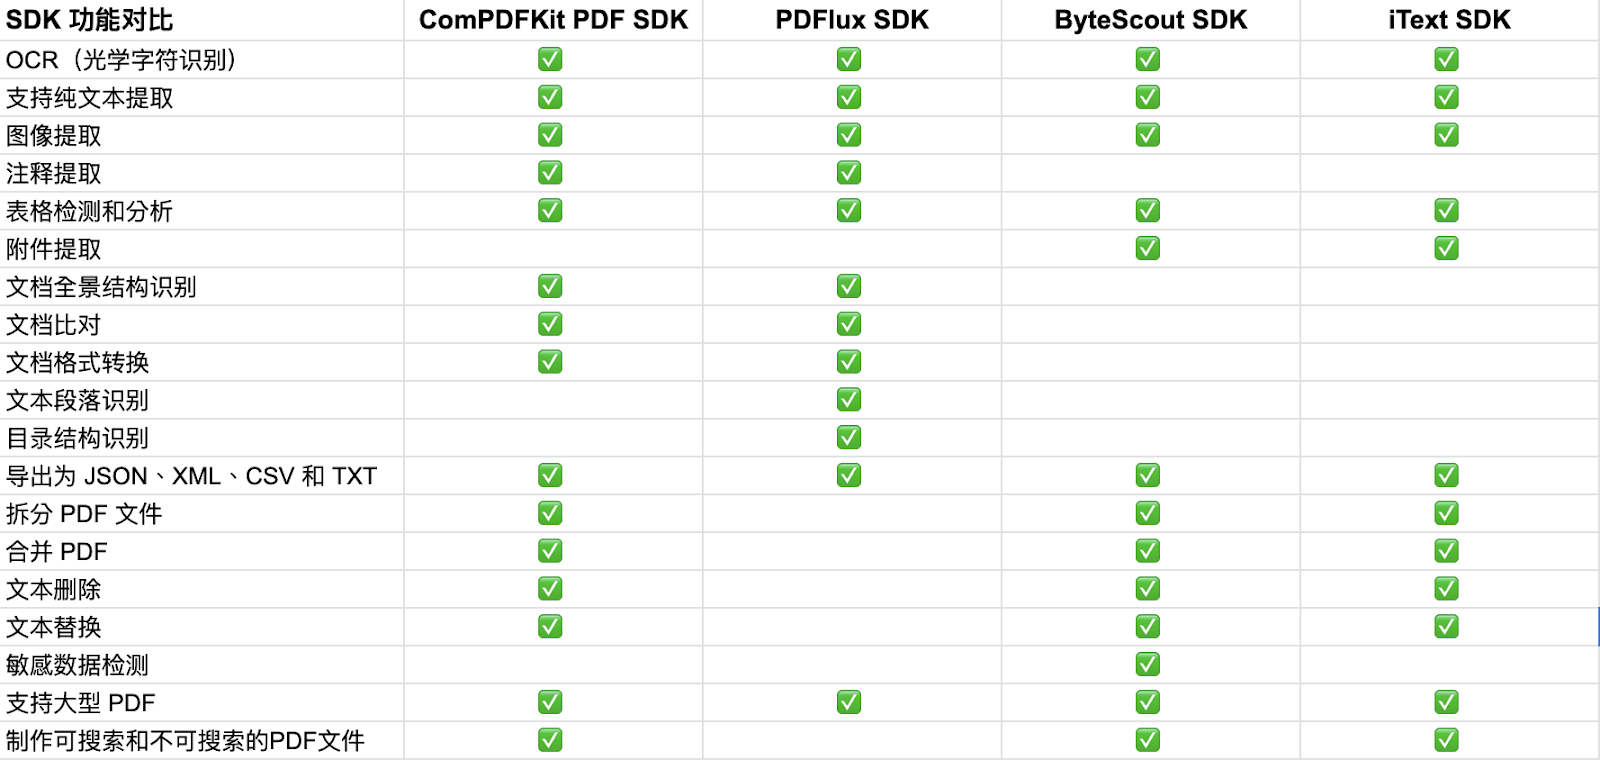 数据提取 PDF SDK 的功能对比表